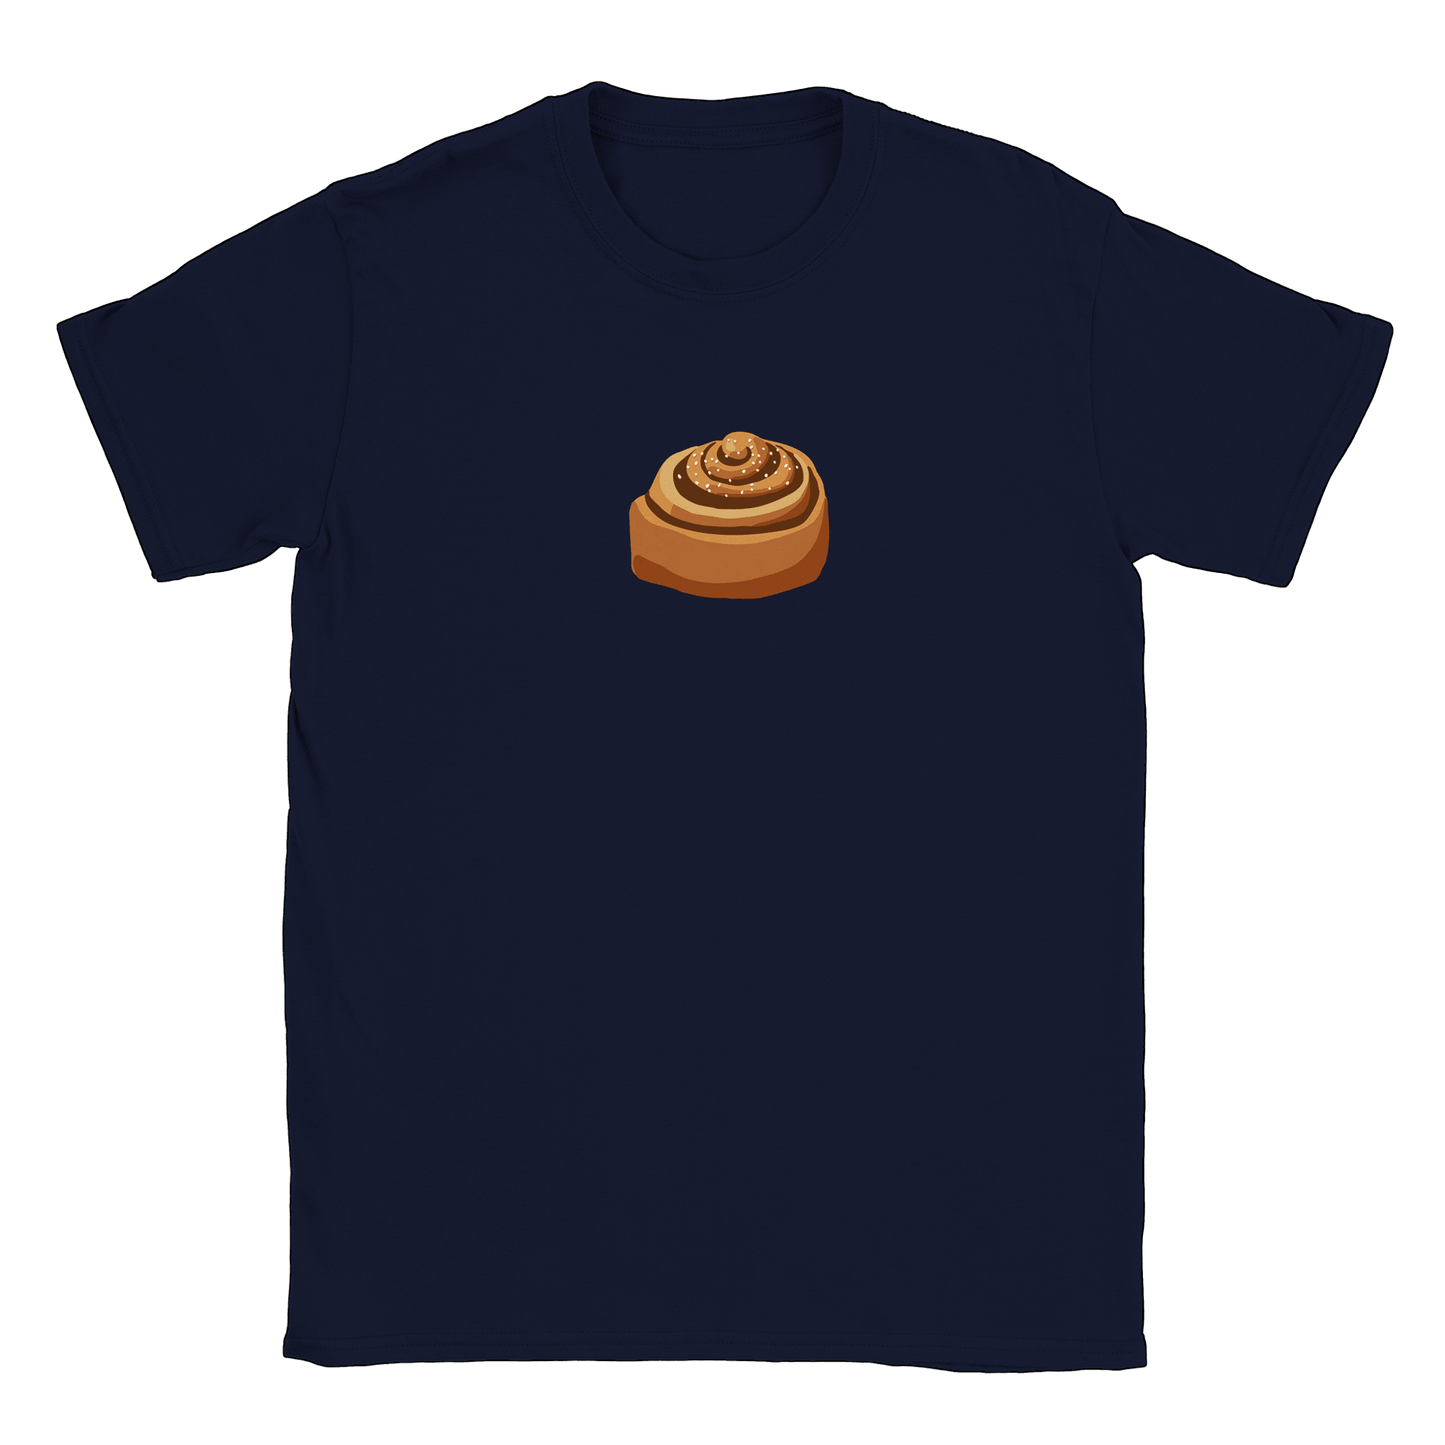 Kanelbulle - T-shirt Navy